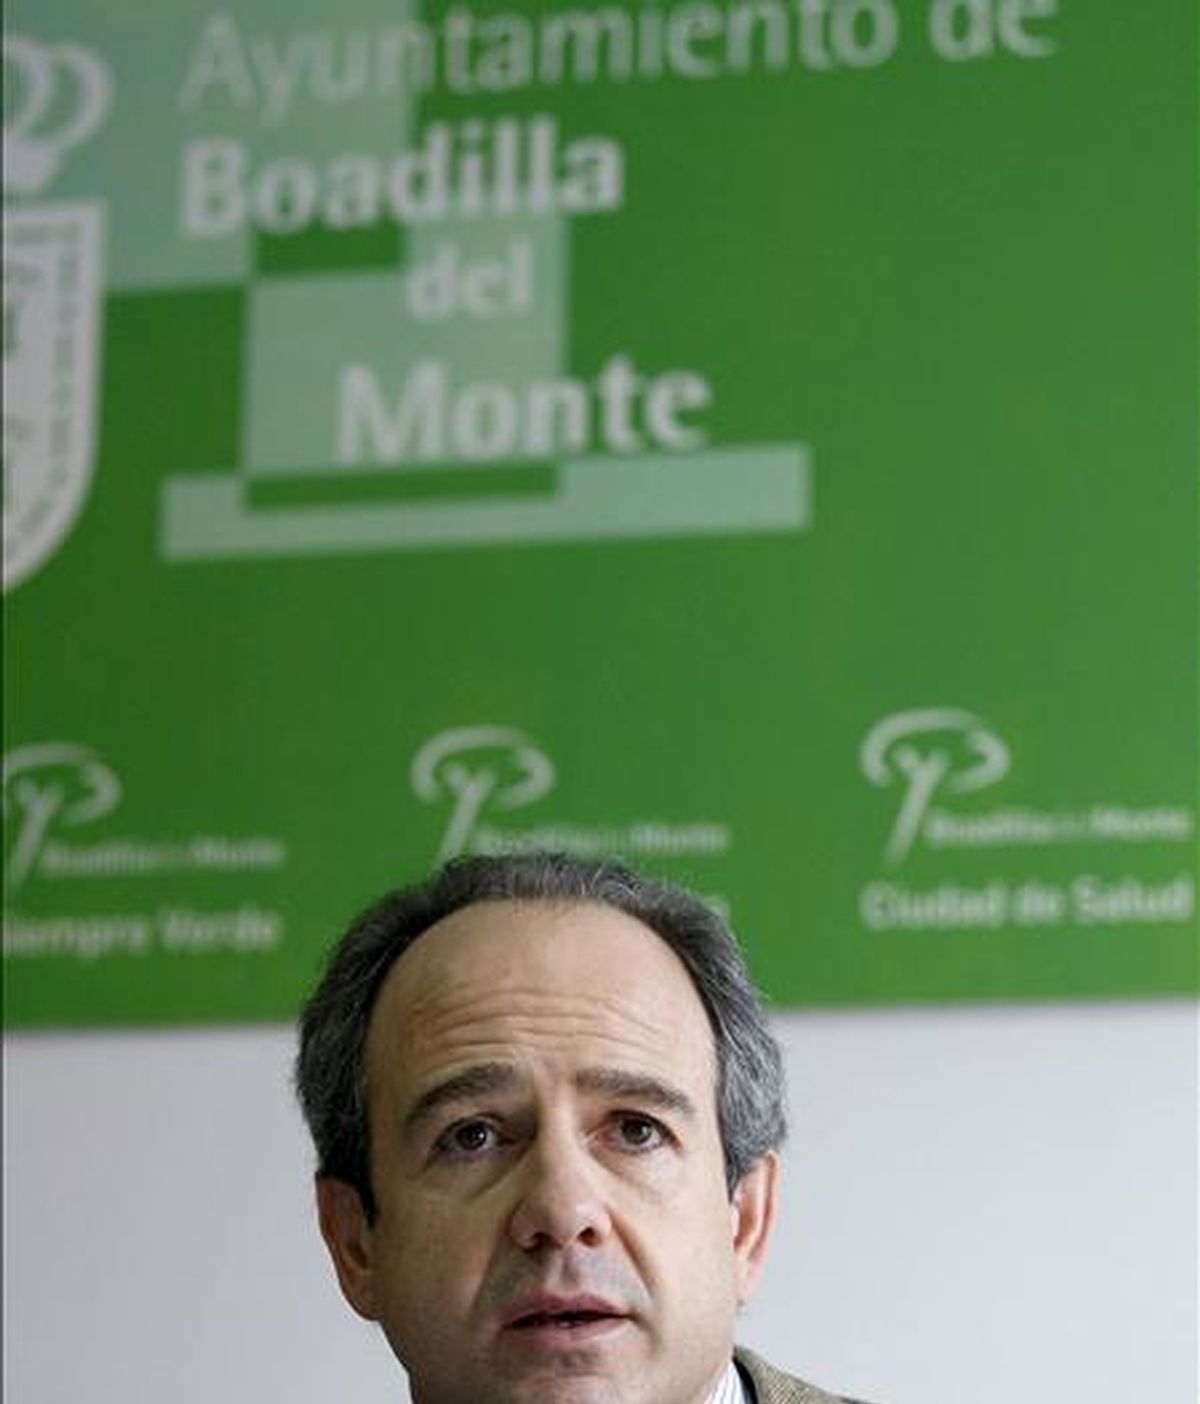 El alcalde de Boadilla del Monte, Arturo González Panero, durante la rueda de prensa que ha ofrecido en referencia a la operación contra la corrupción, el tráfico de influencias y el blanqueo de capitales que se ha desarrollado en su municipio y otras localidades españolas. EFE